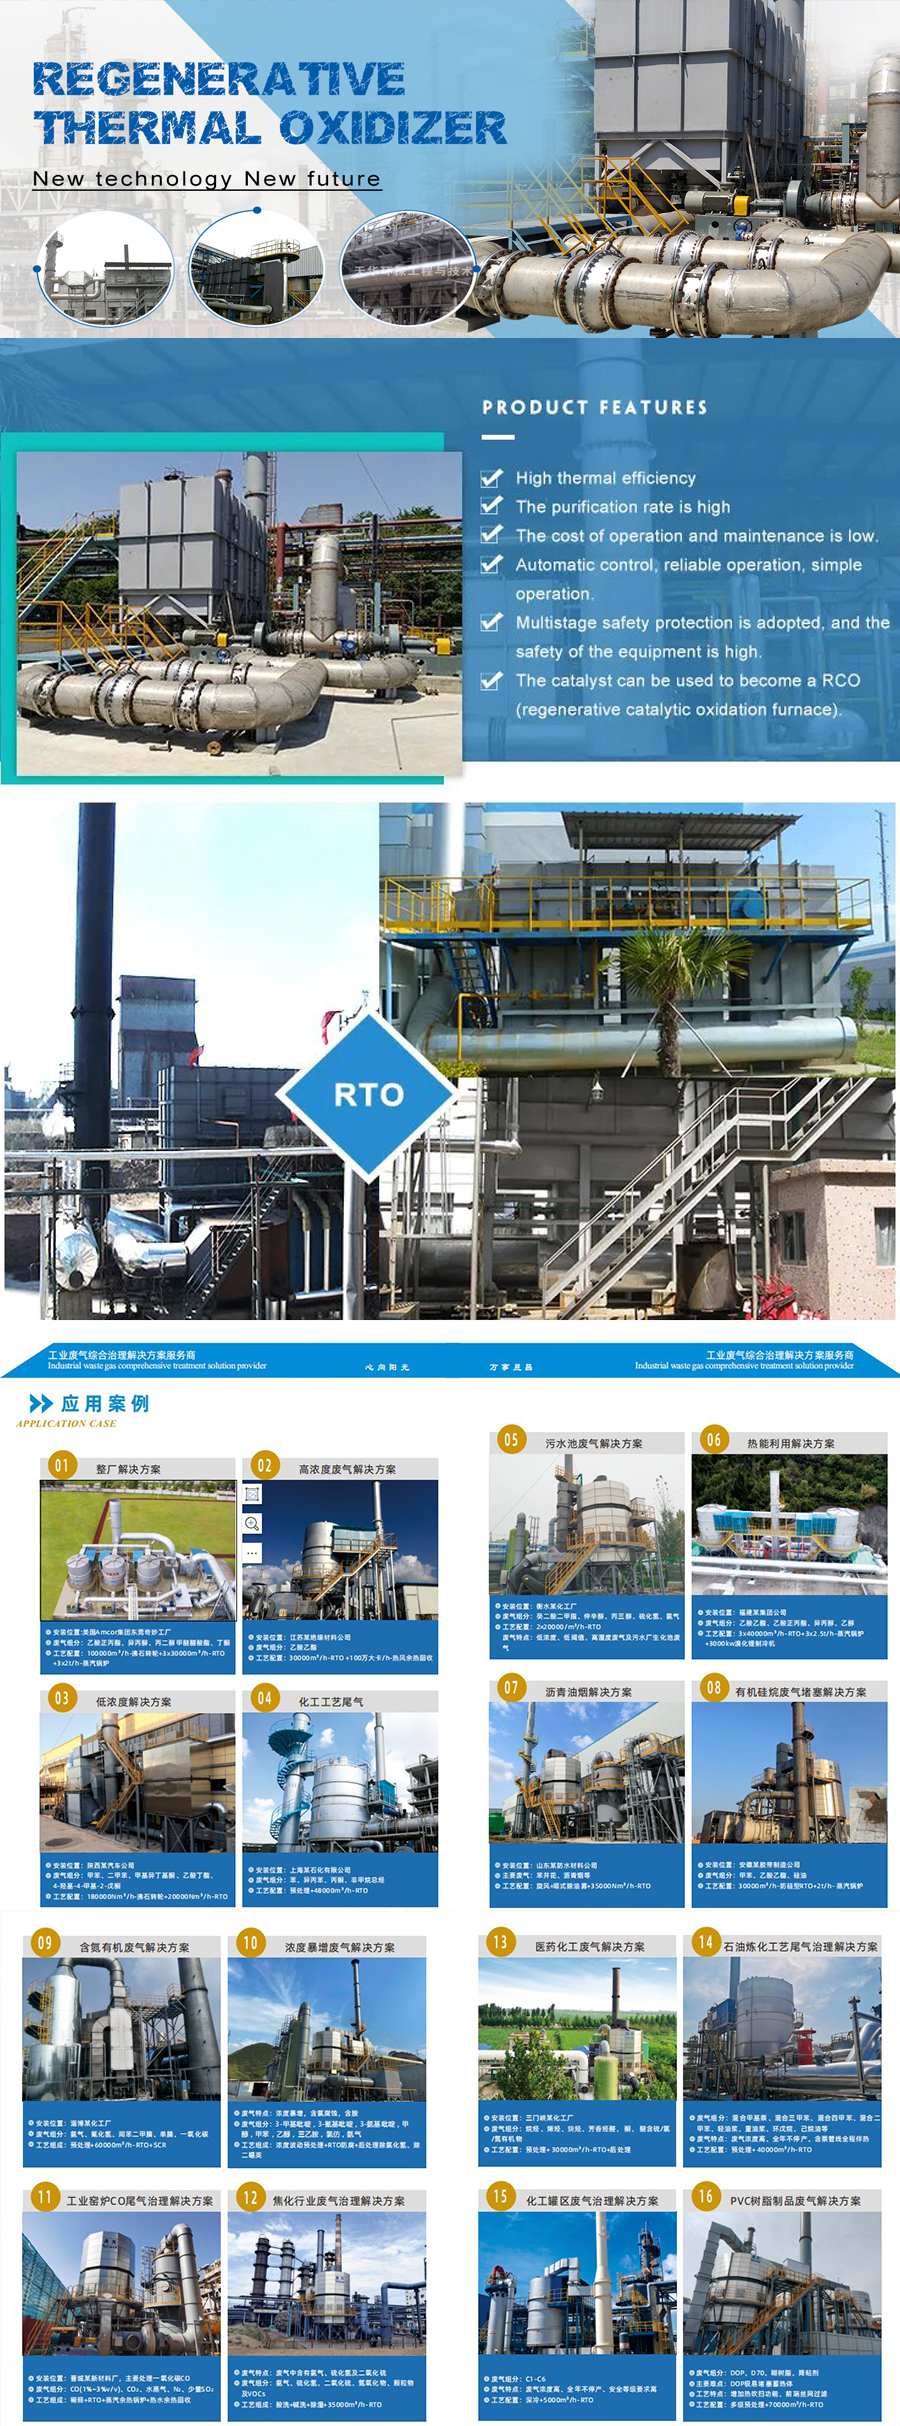 中国优质高效蓄热式氧化炉 - Rto 用于排出 Vocs  